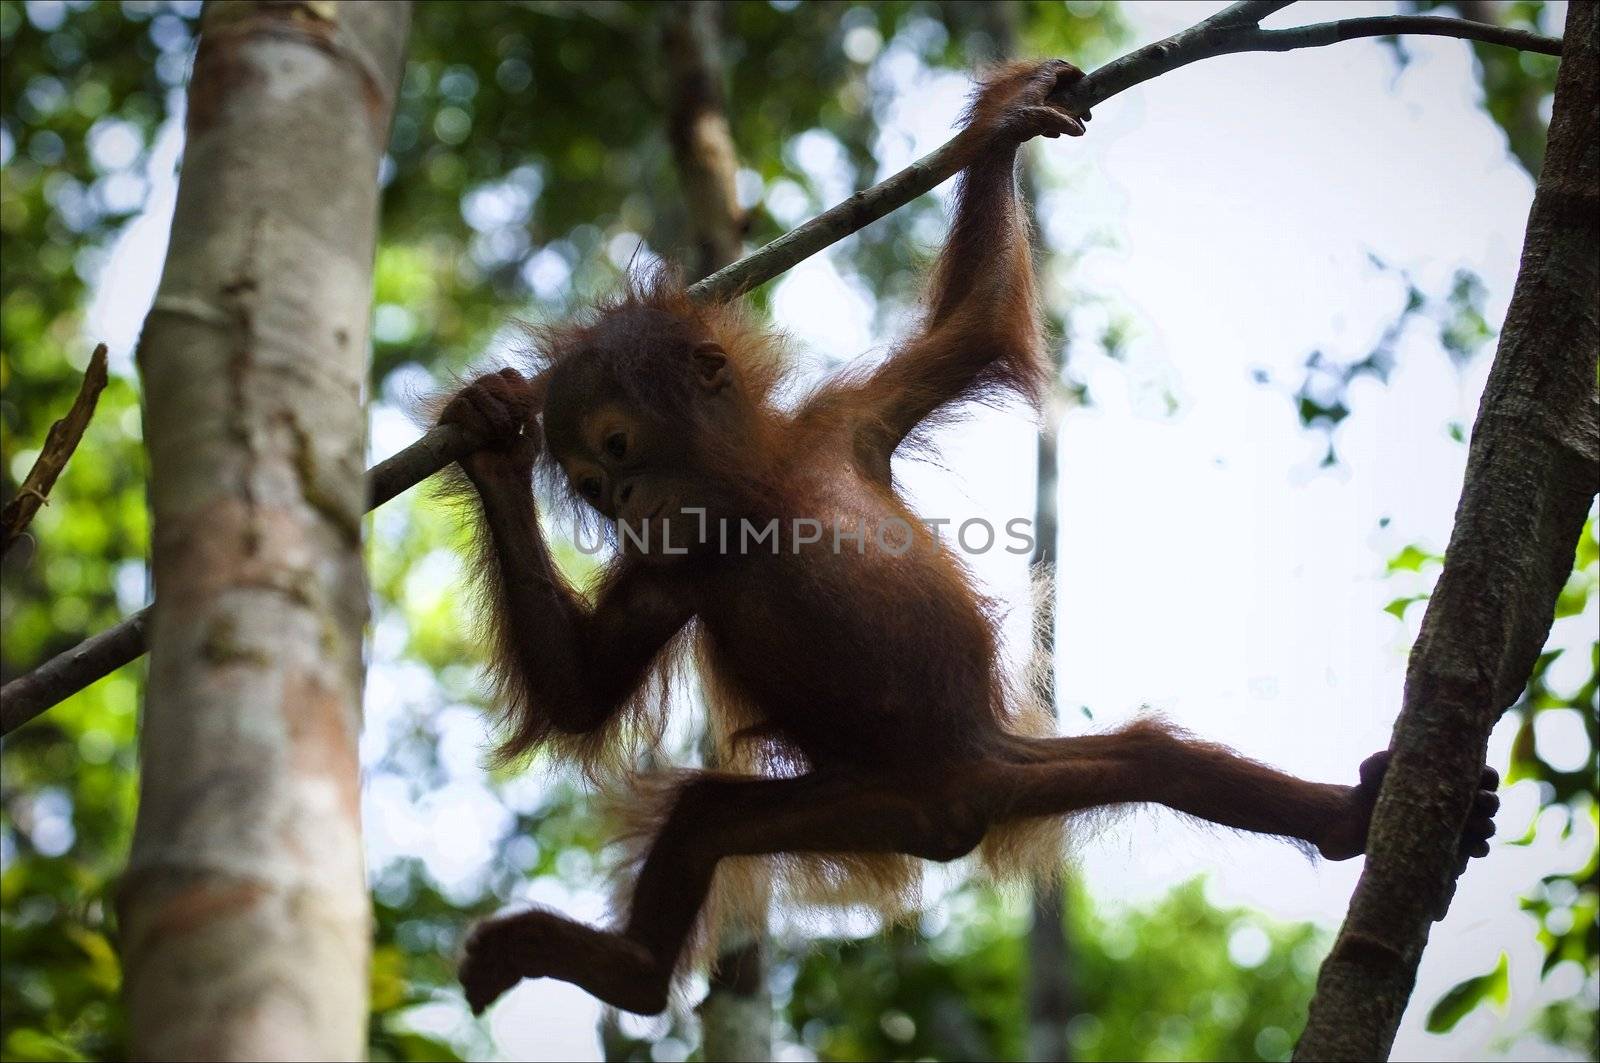 Cub of the orangutan on a branch. by SURZ